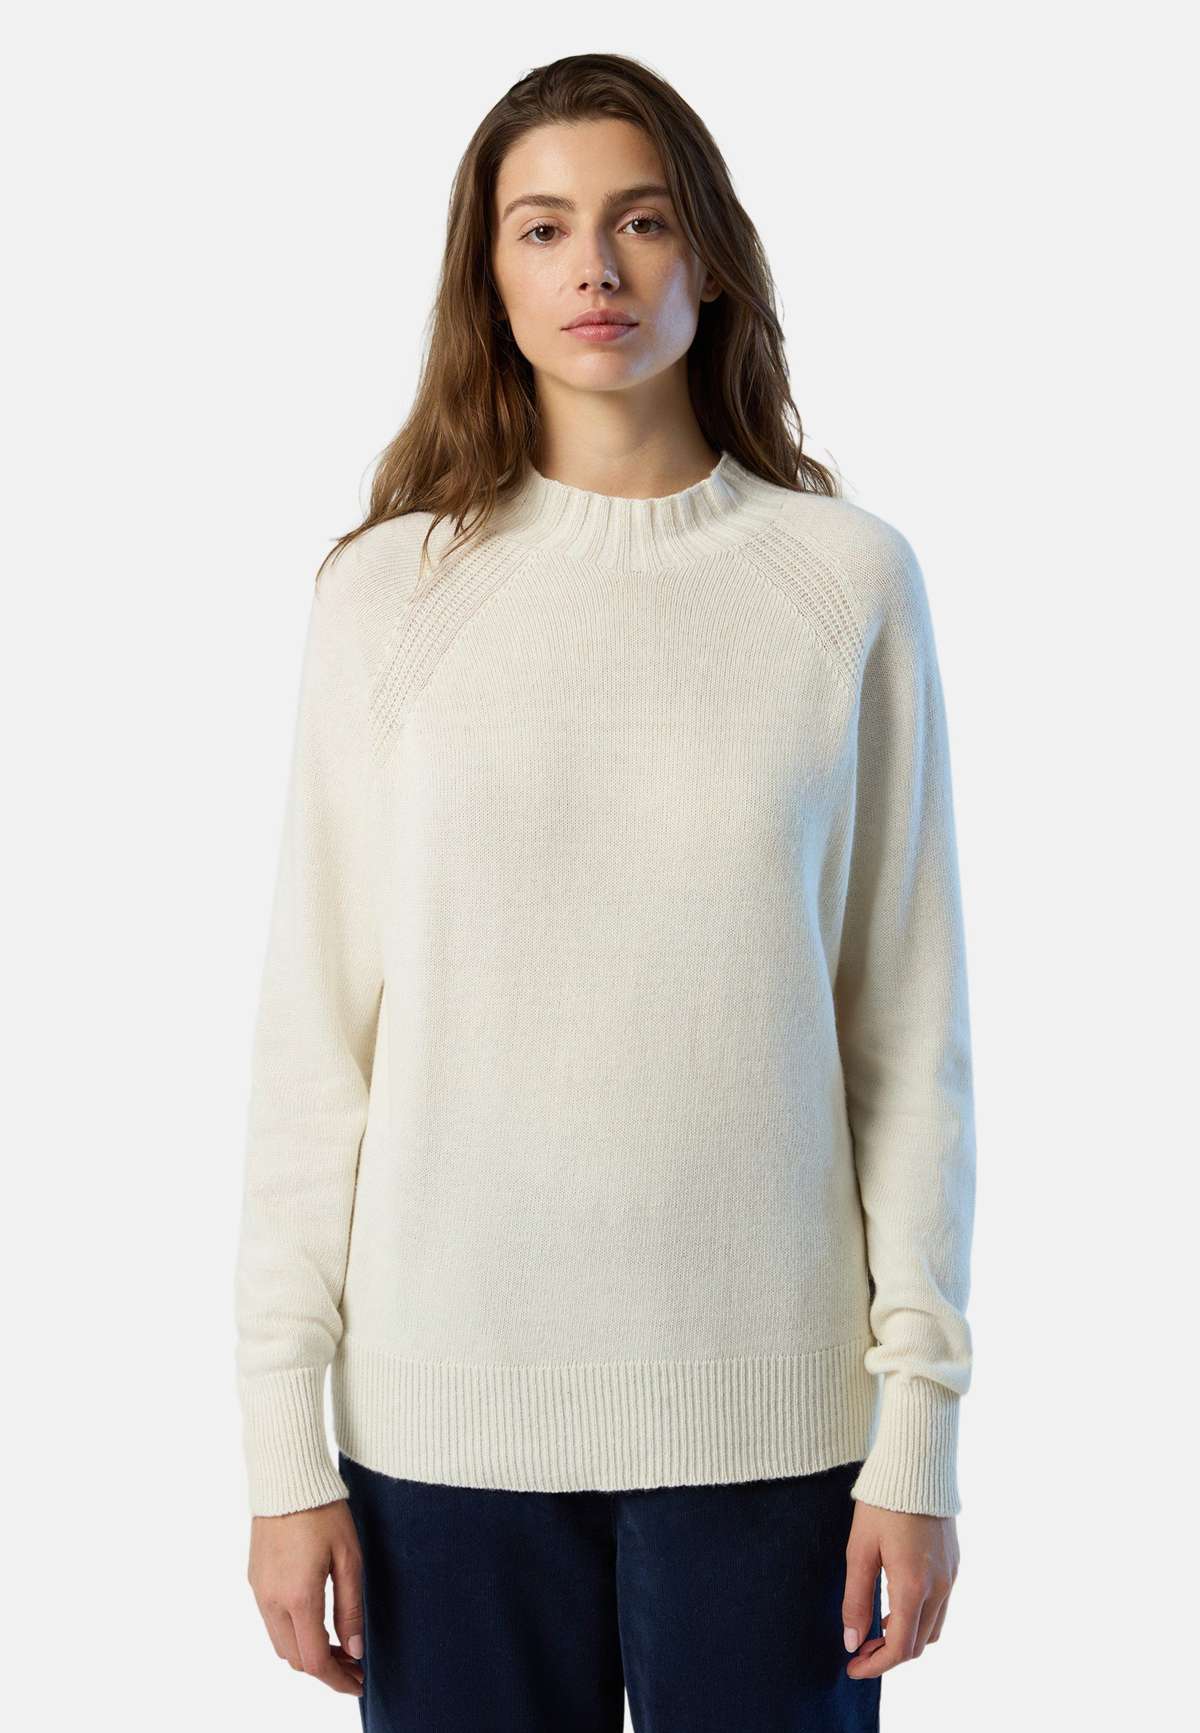 Вязаный свитер-джемпер из эко-кашемира другое